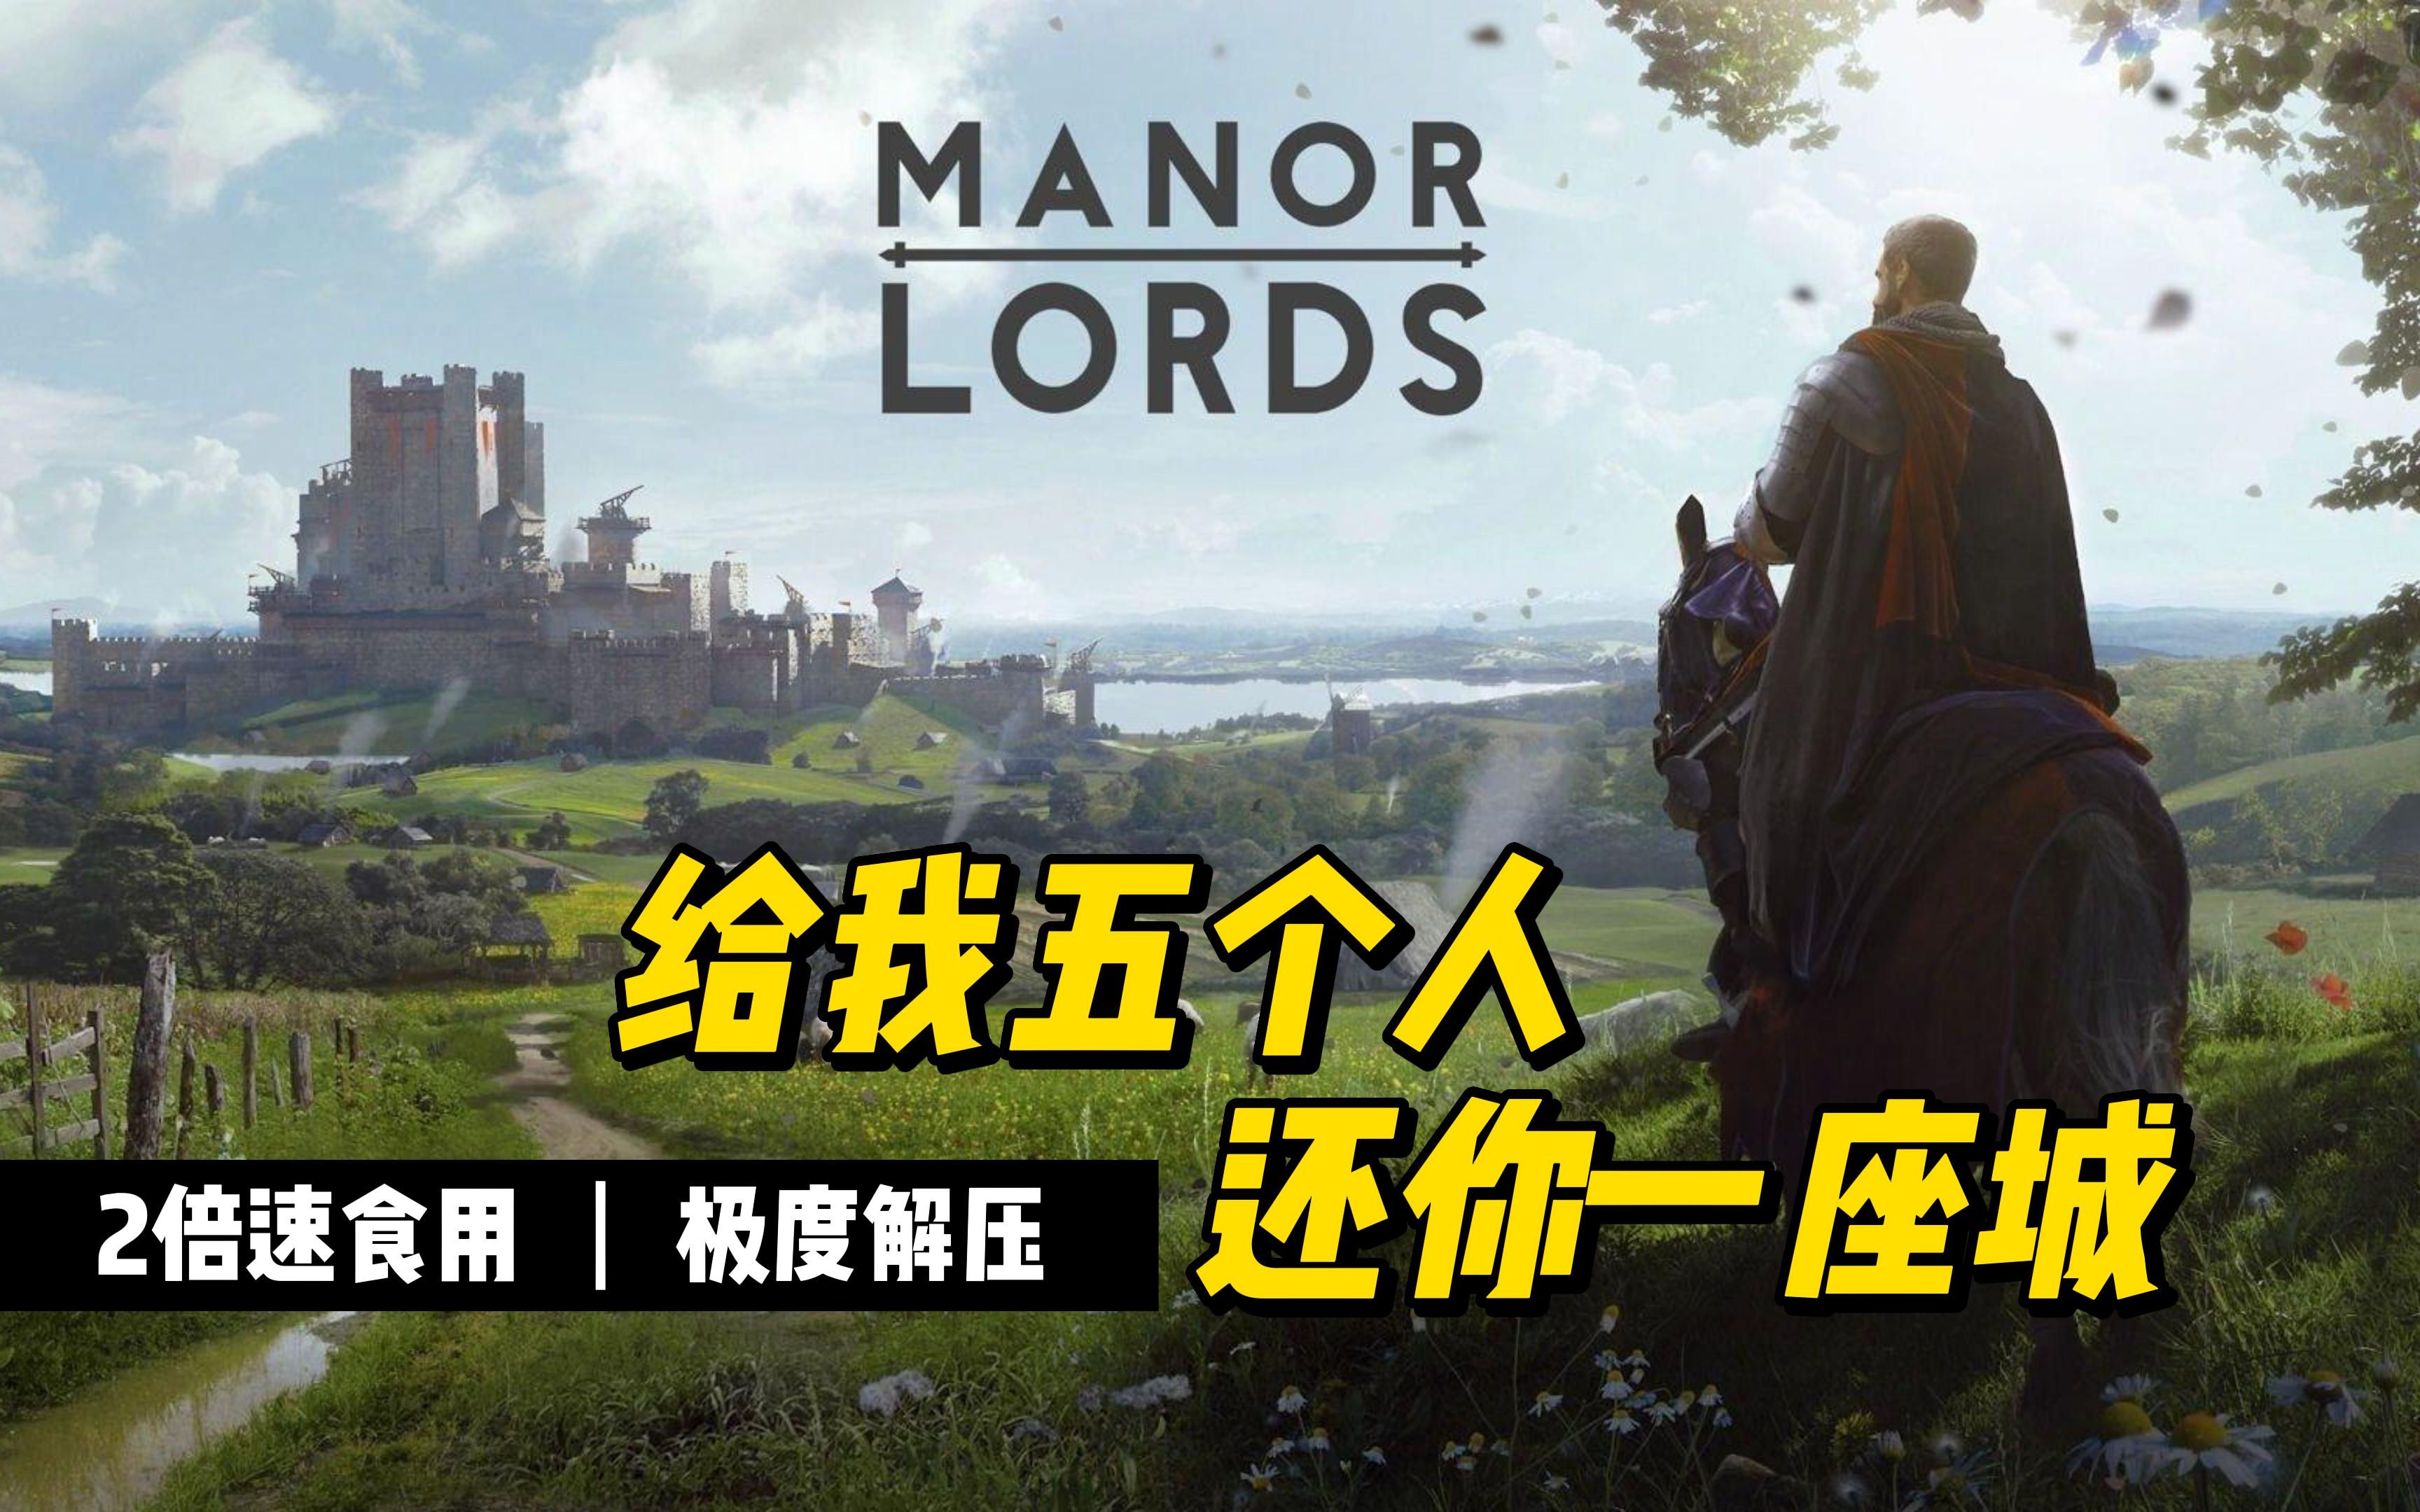 【庄园领主 Manor Lords】demo试玩，中世纪骑砍还是刁民模拟器？